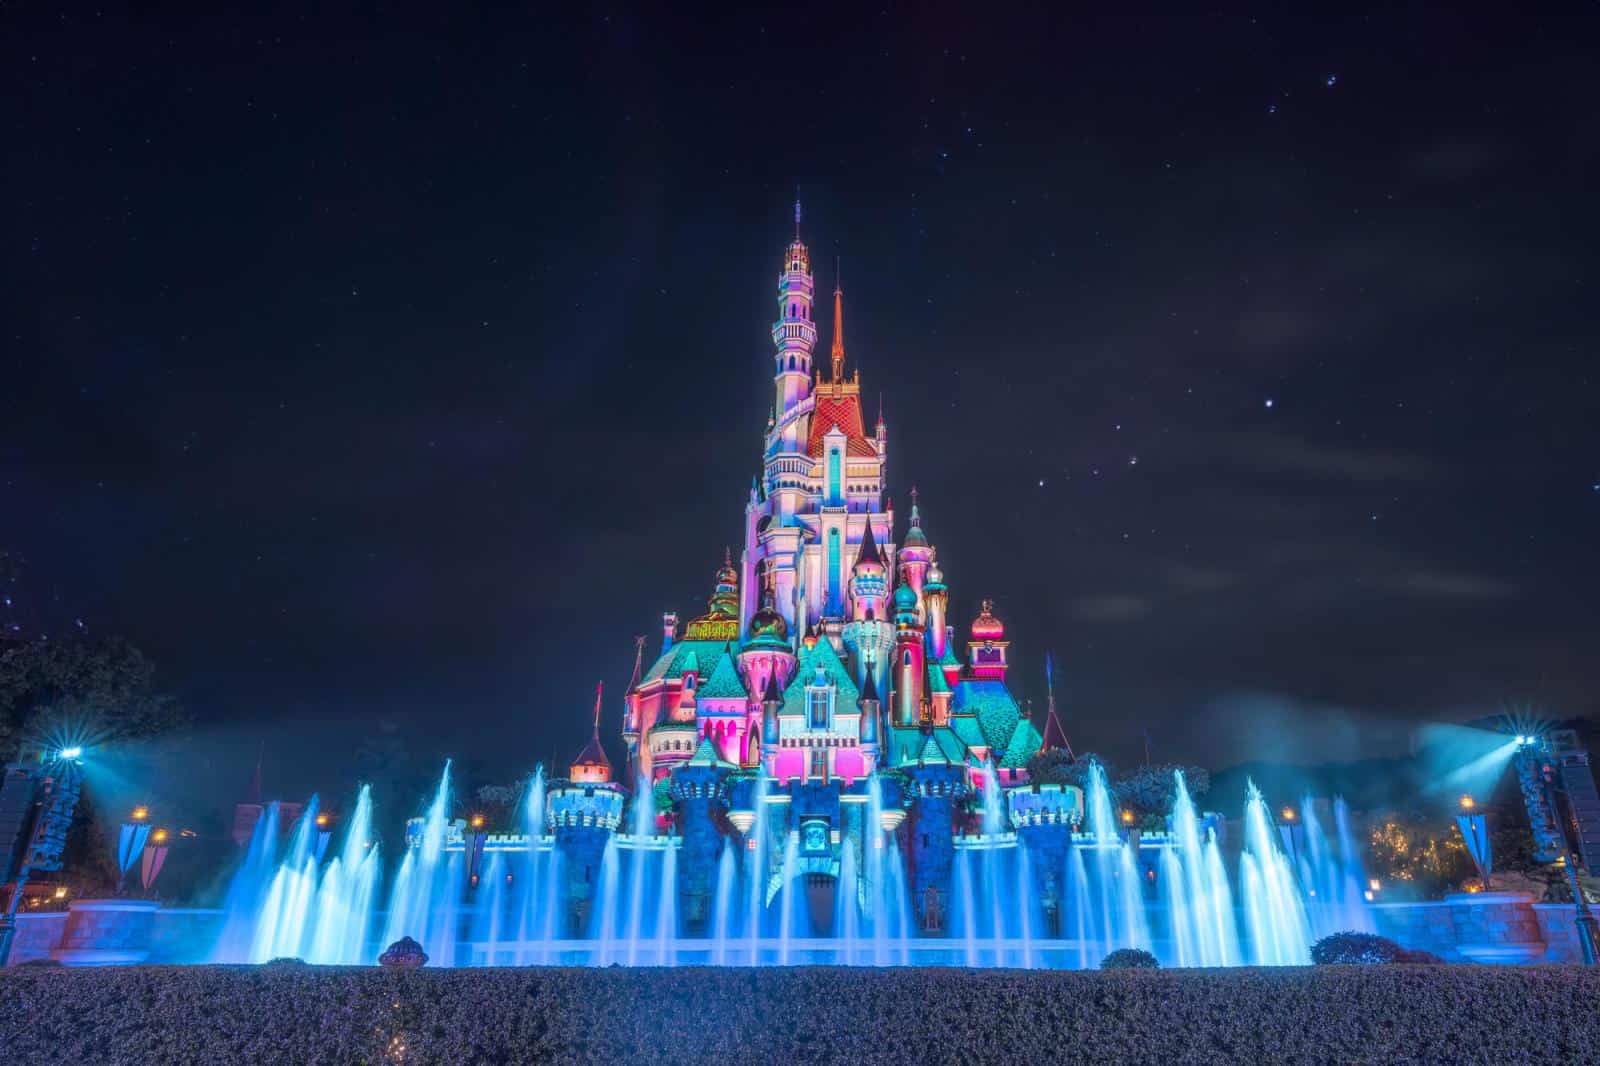 Hong Kong Disneyland Castle of Magical Dreams at Night